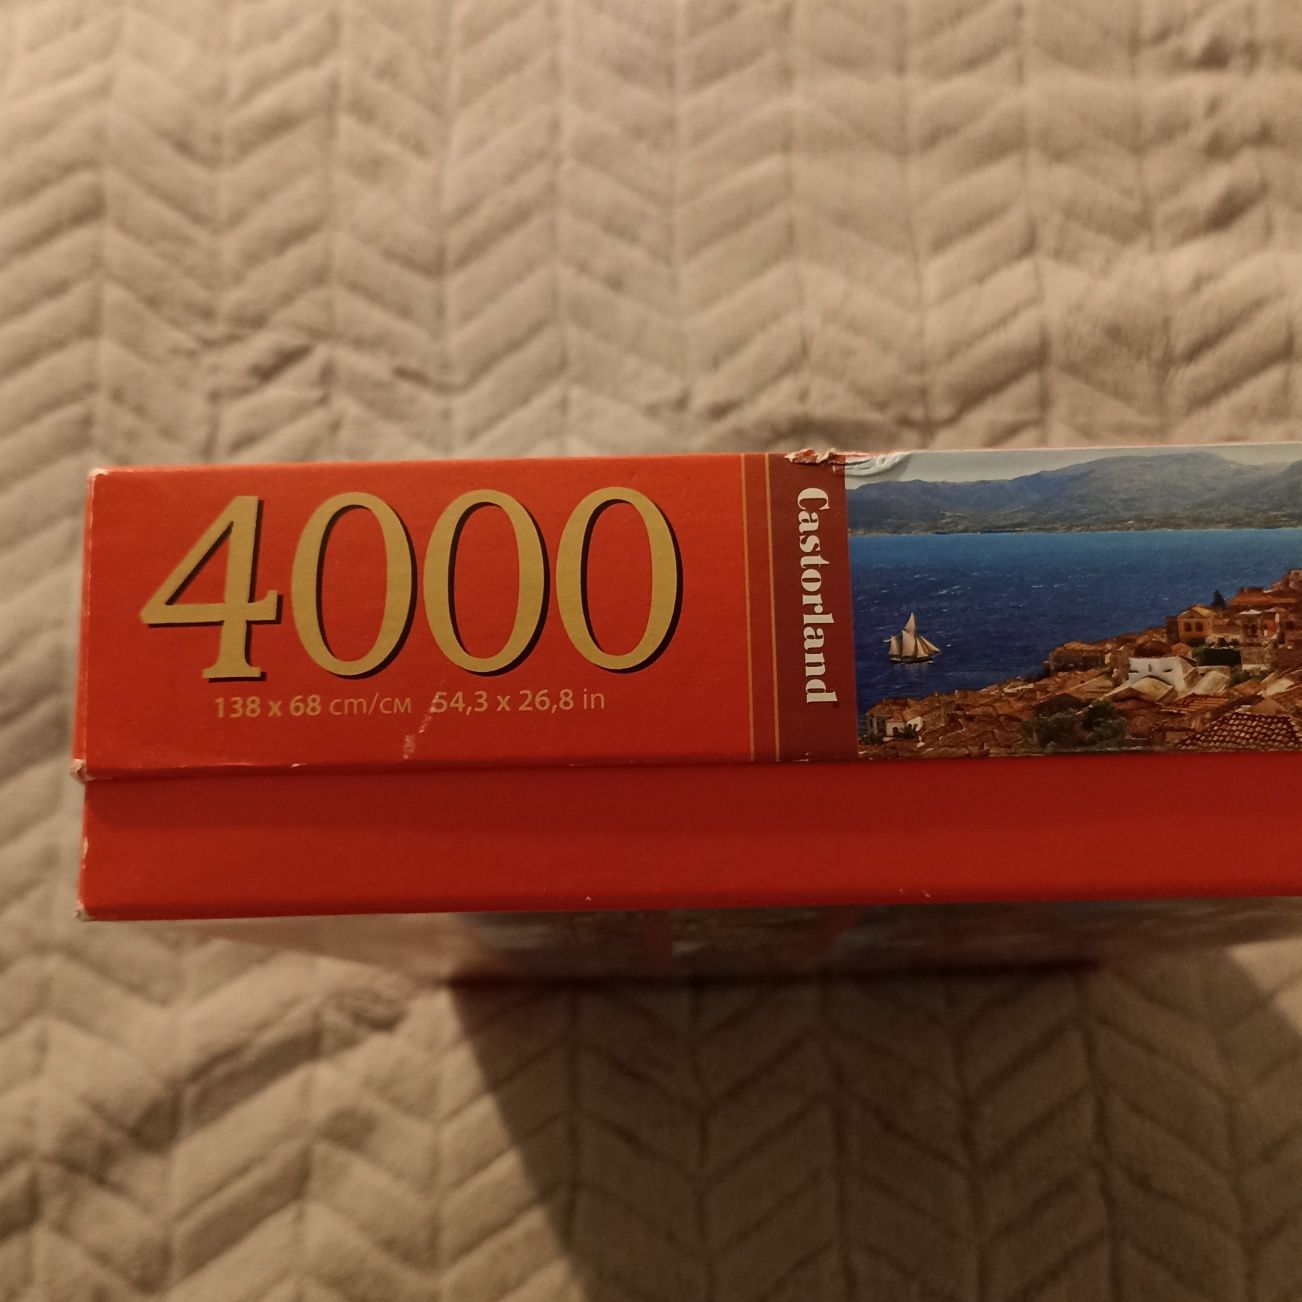 Puzzle Castorland 4000